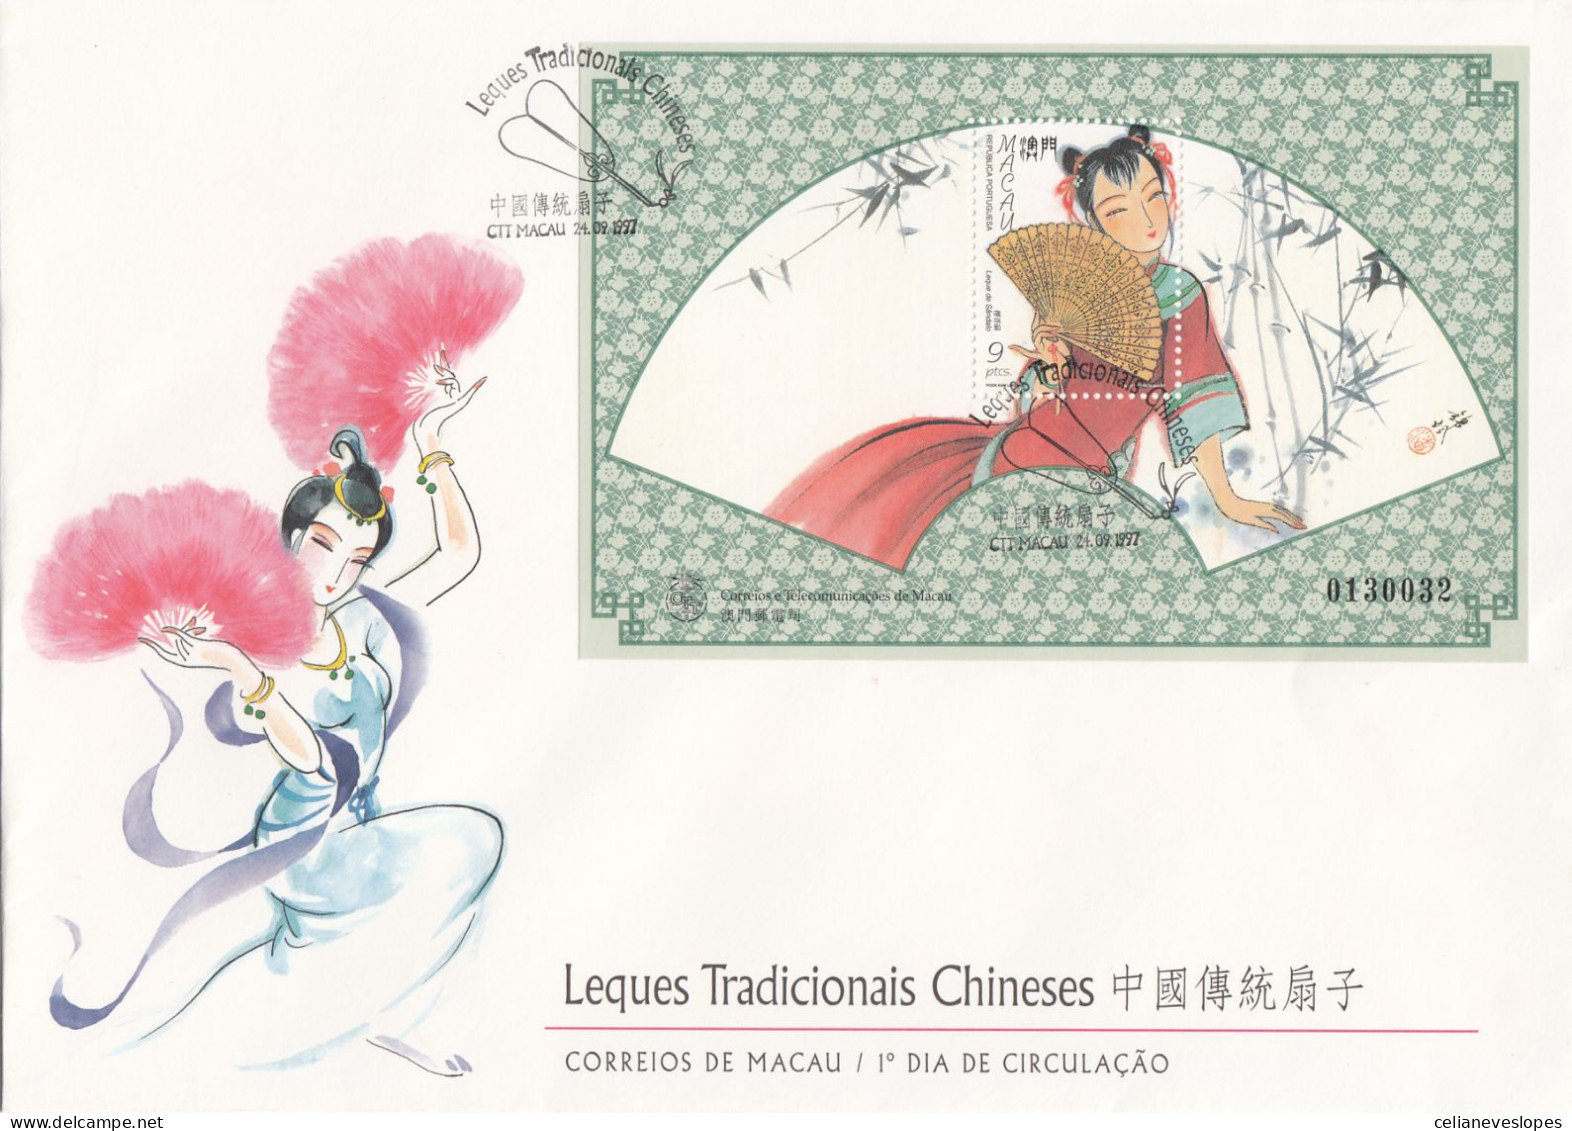 Macau, FDCB,(41) Leques Tradicionais Chineses, 1997, - Mundifil Nºs 910 - FDC